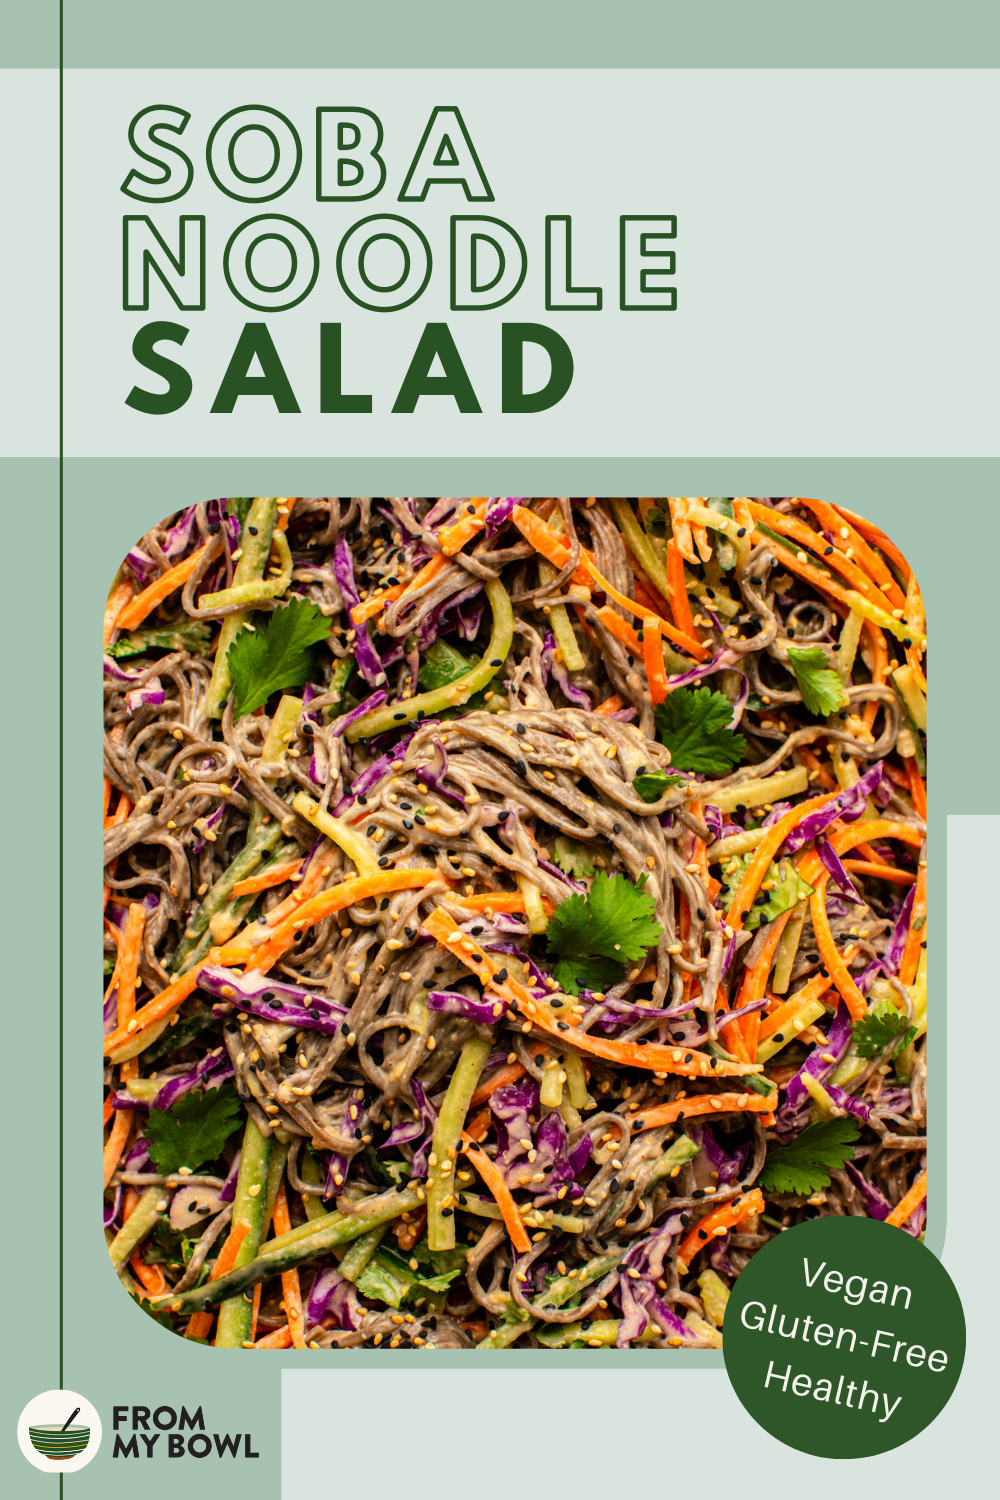 An enlarged image of soba noodle salad